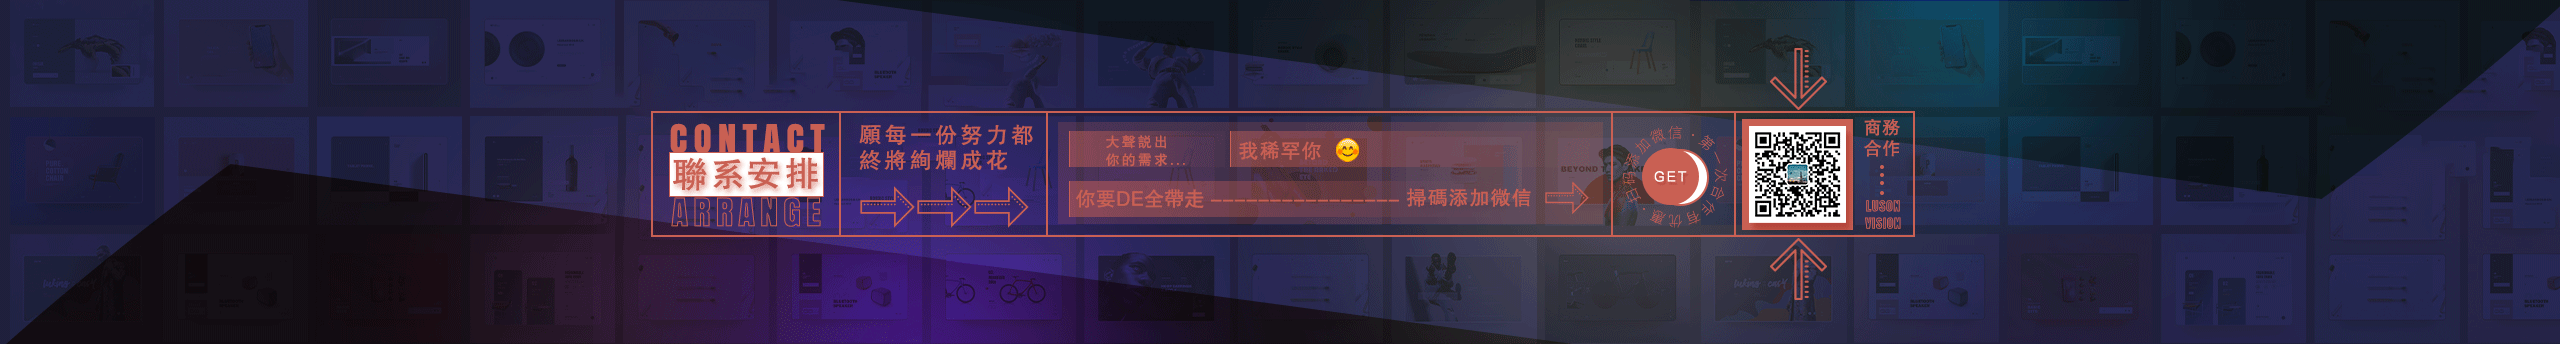 广州网页设计师鲁森视觉的创作者主页